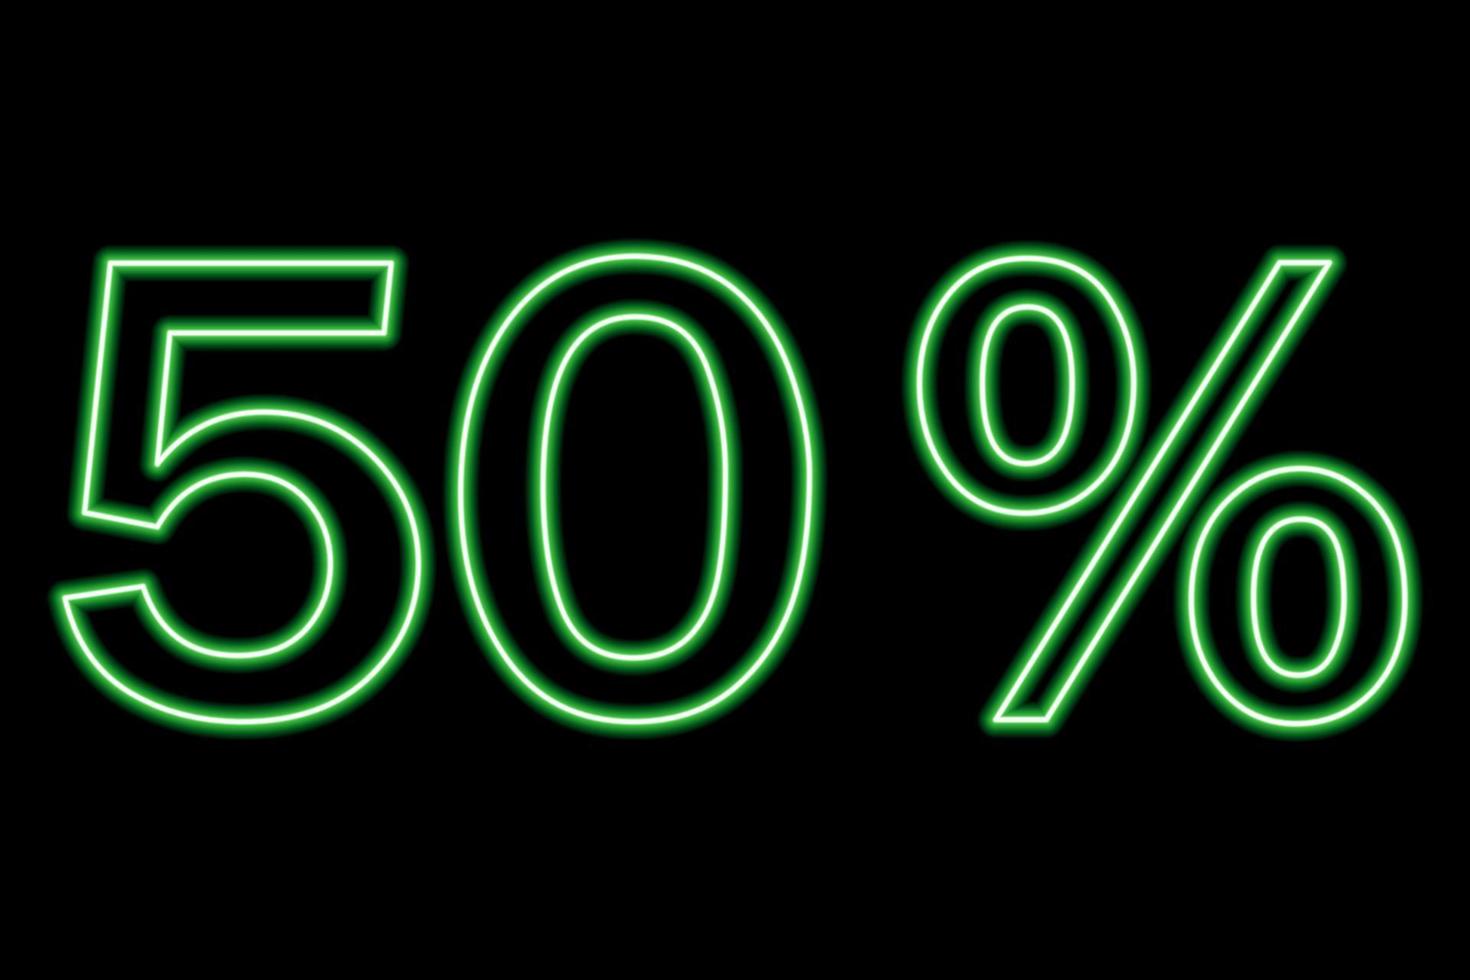 Inscripción del 50 por ciento en un fondo negro. línea verde en estilo neón. vector